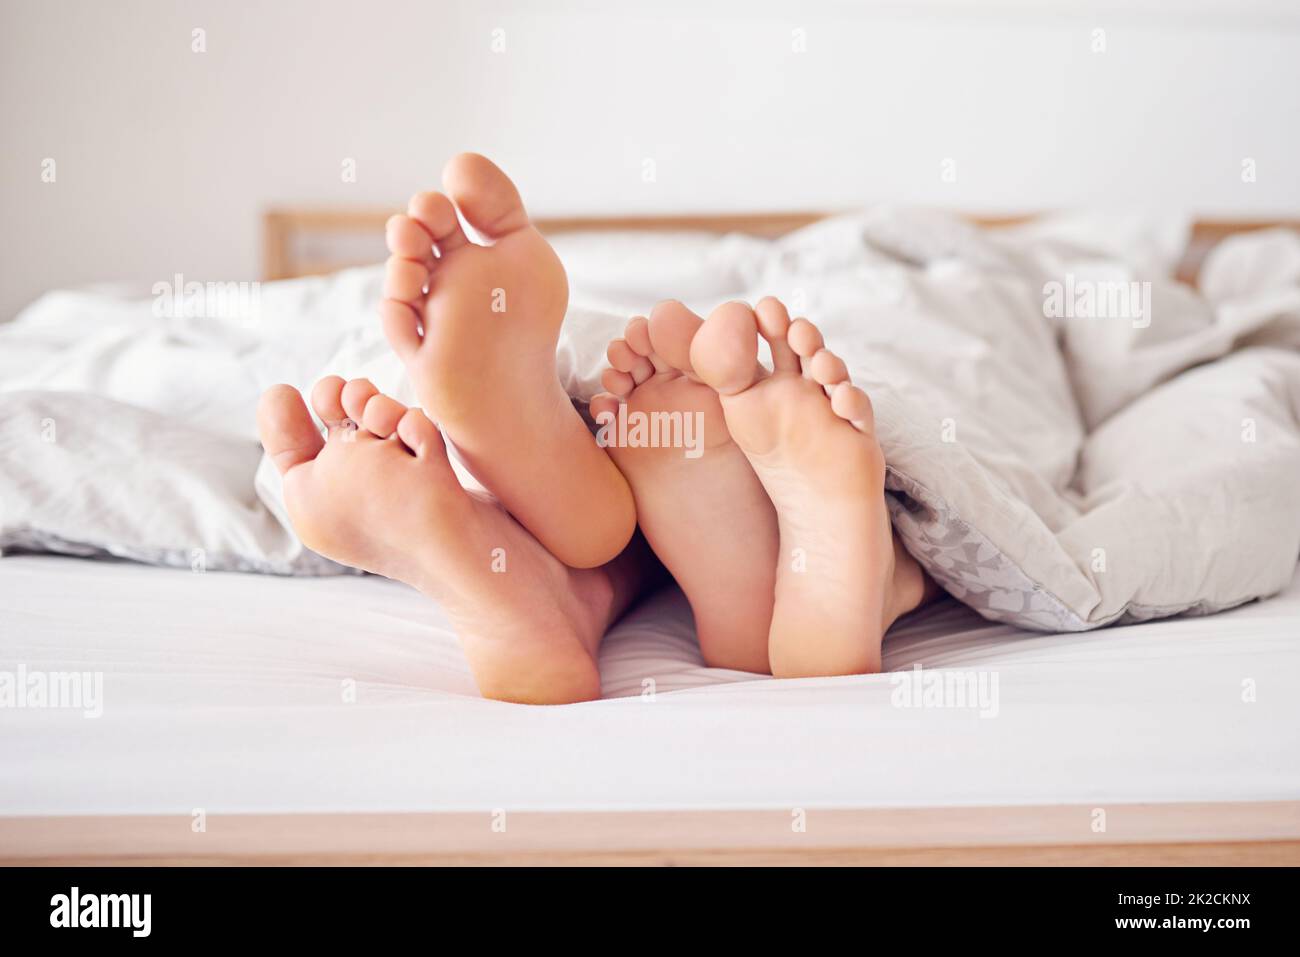 Nous allons simplement rester au lit aujourd'hui. Photo d'un couple pieds en poking hors de sous une couette. Banque D'Images